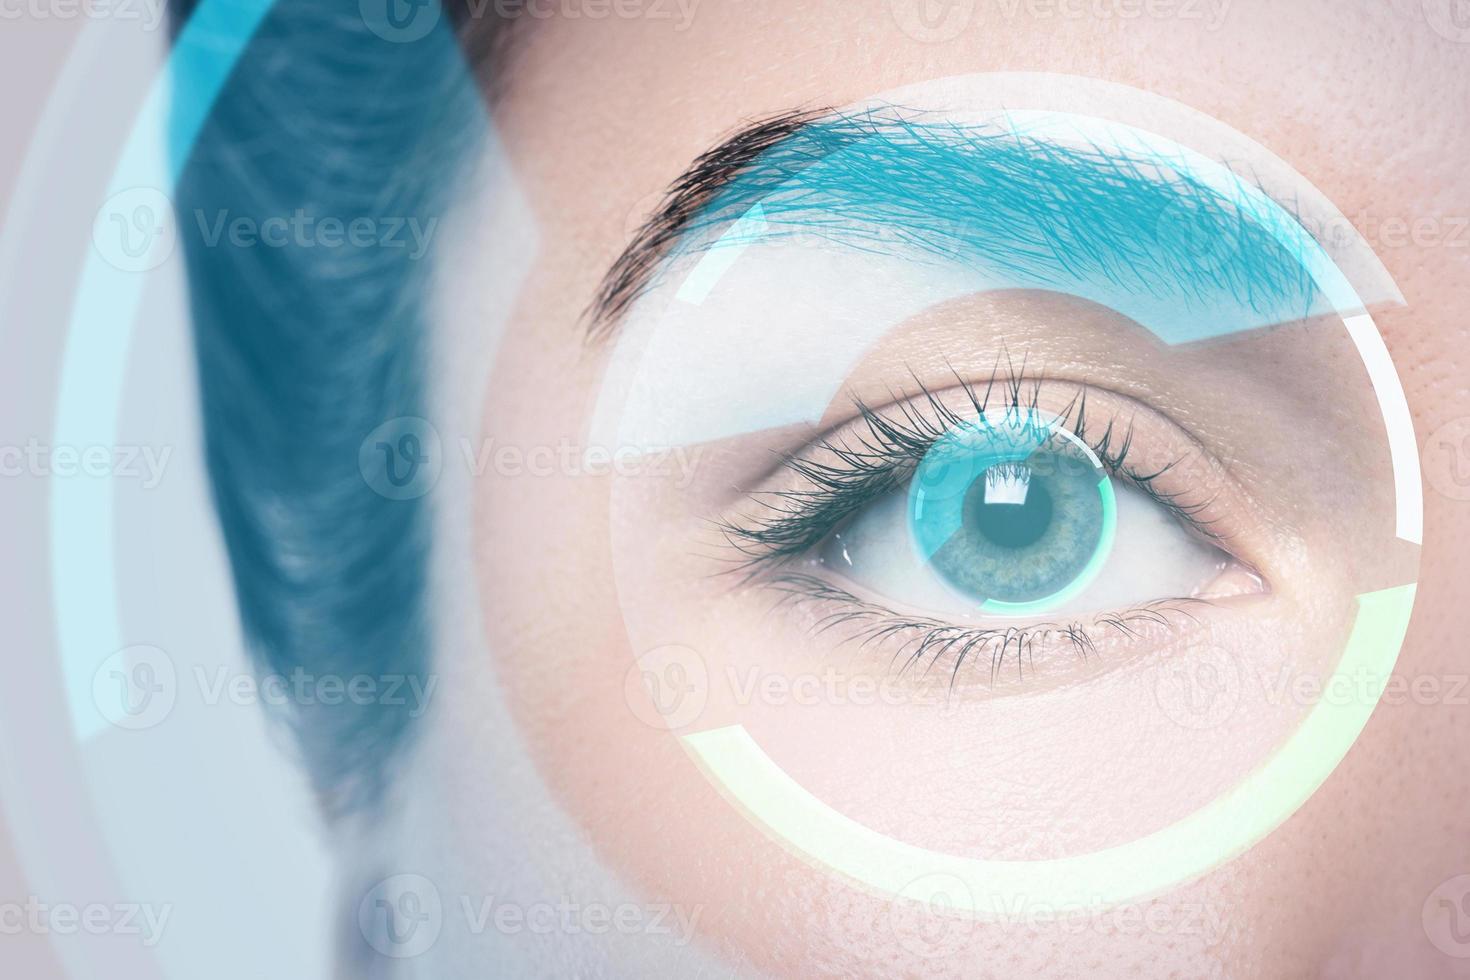 begrepp av förändrad verklighet och biometrisk iris igenkännande eller visuell skärpa kolla upp foto